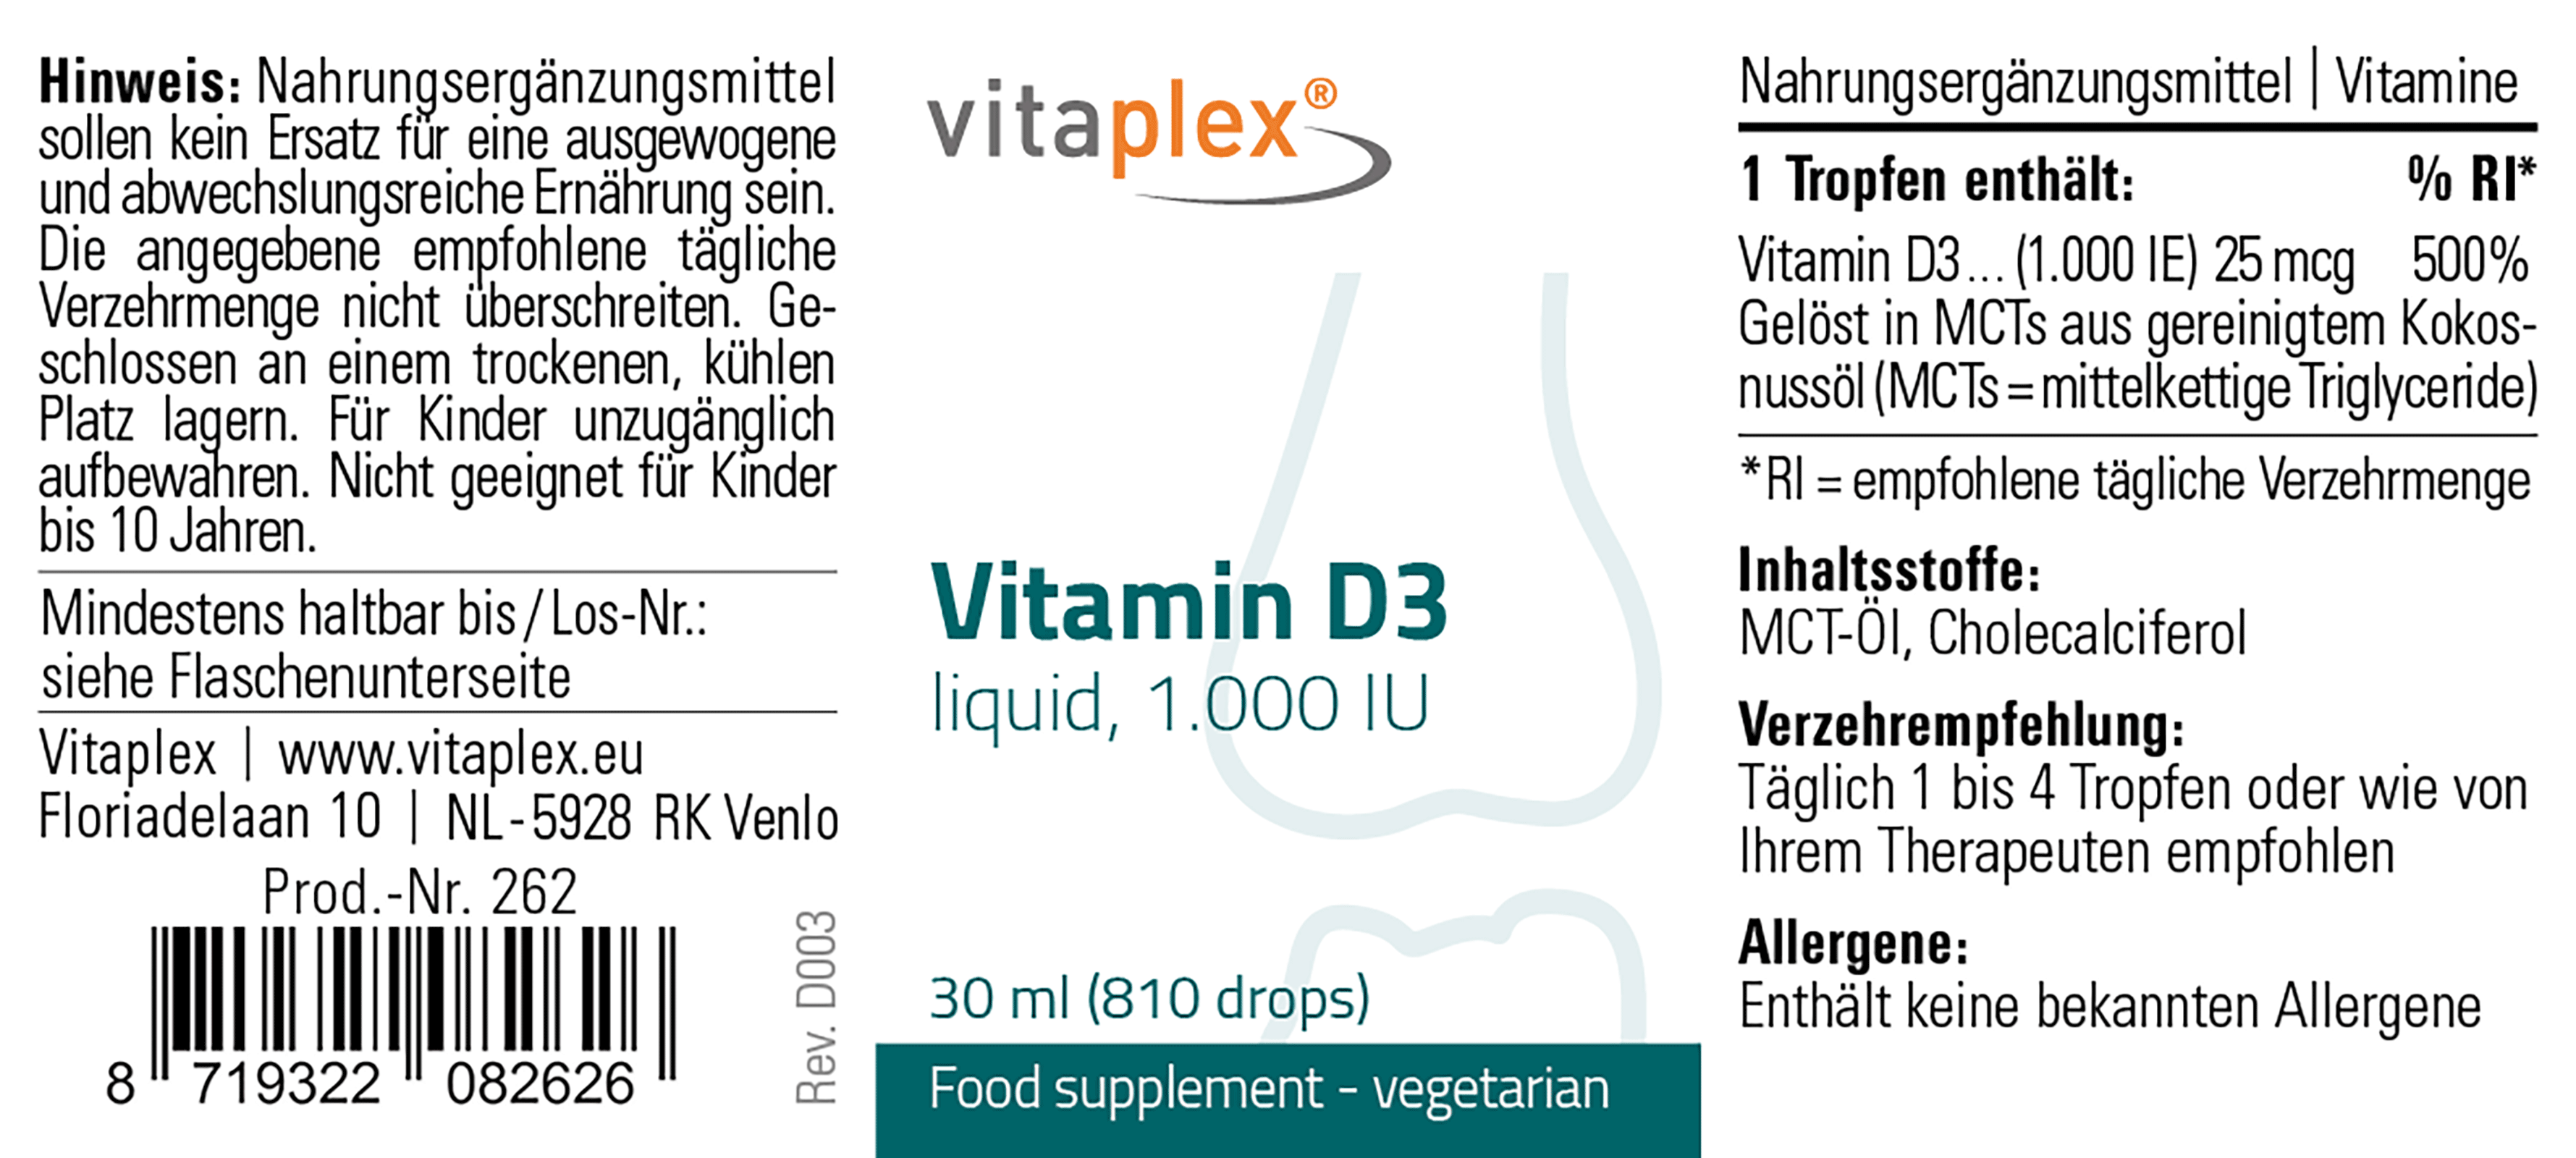 Vitamin D3 liquid, 1.000 IU / drop 